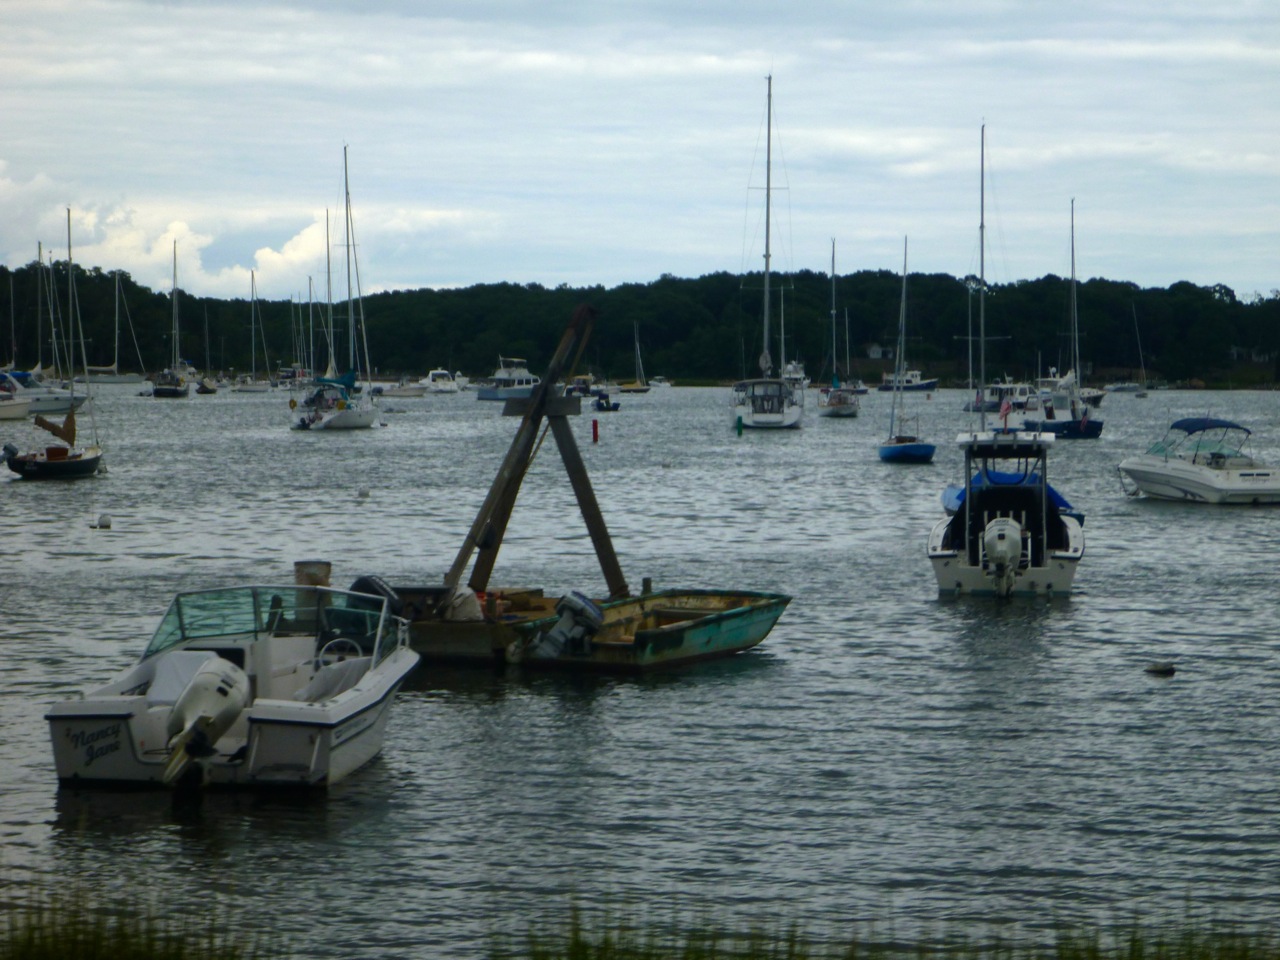 Der er masser af bøjer og både mellem The Hamptons og North Fork i Gardiners Bay. Foto: Signe Storr